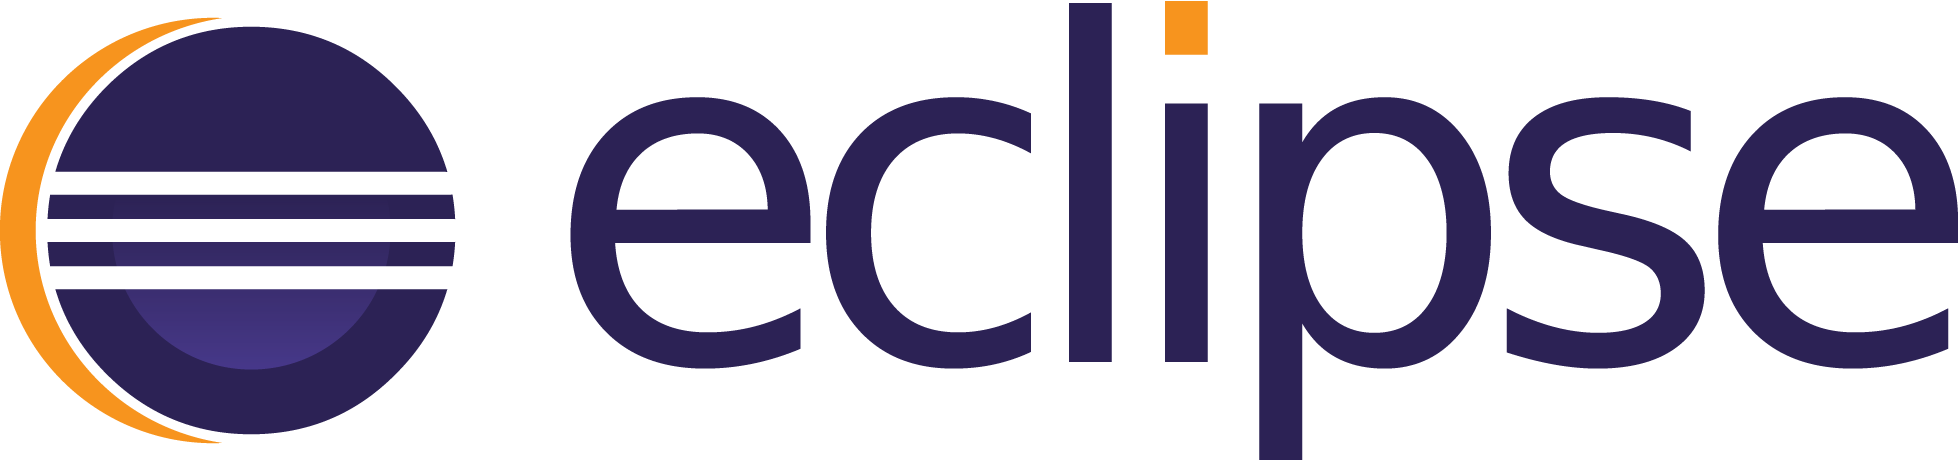 Eclipse Color Logo - Eclipse Logo Png (1958x460)